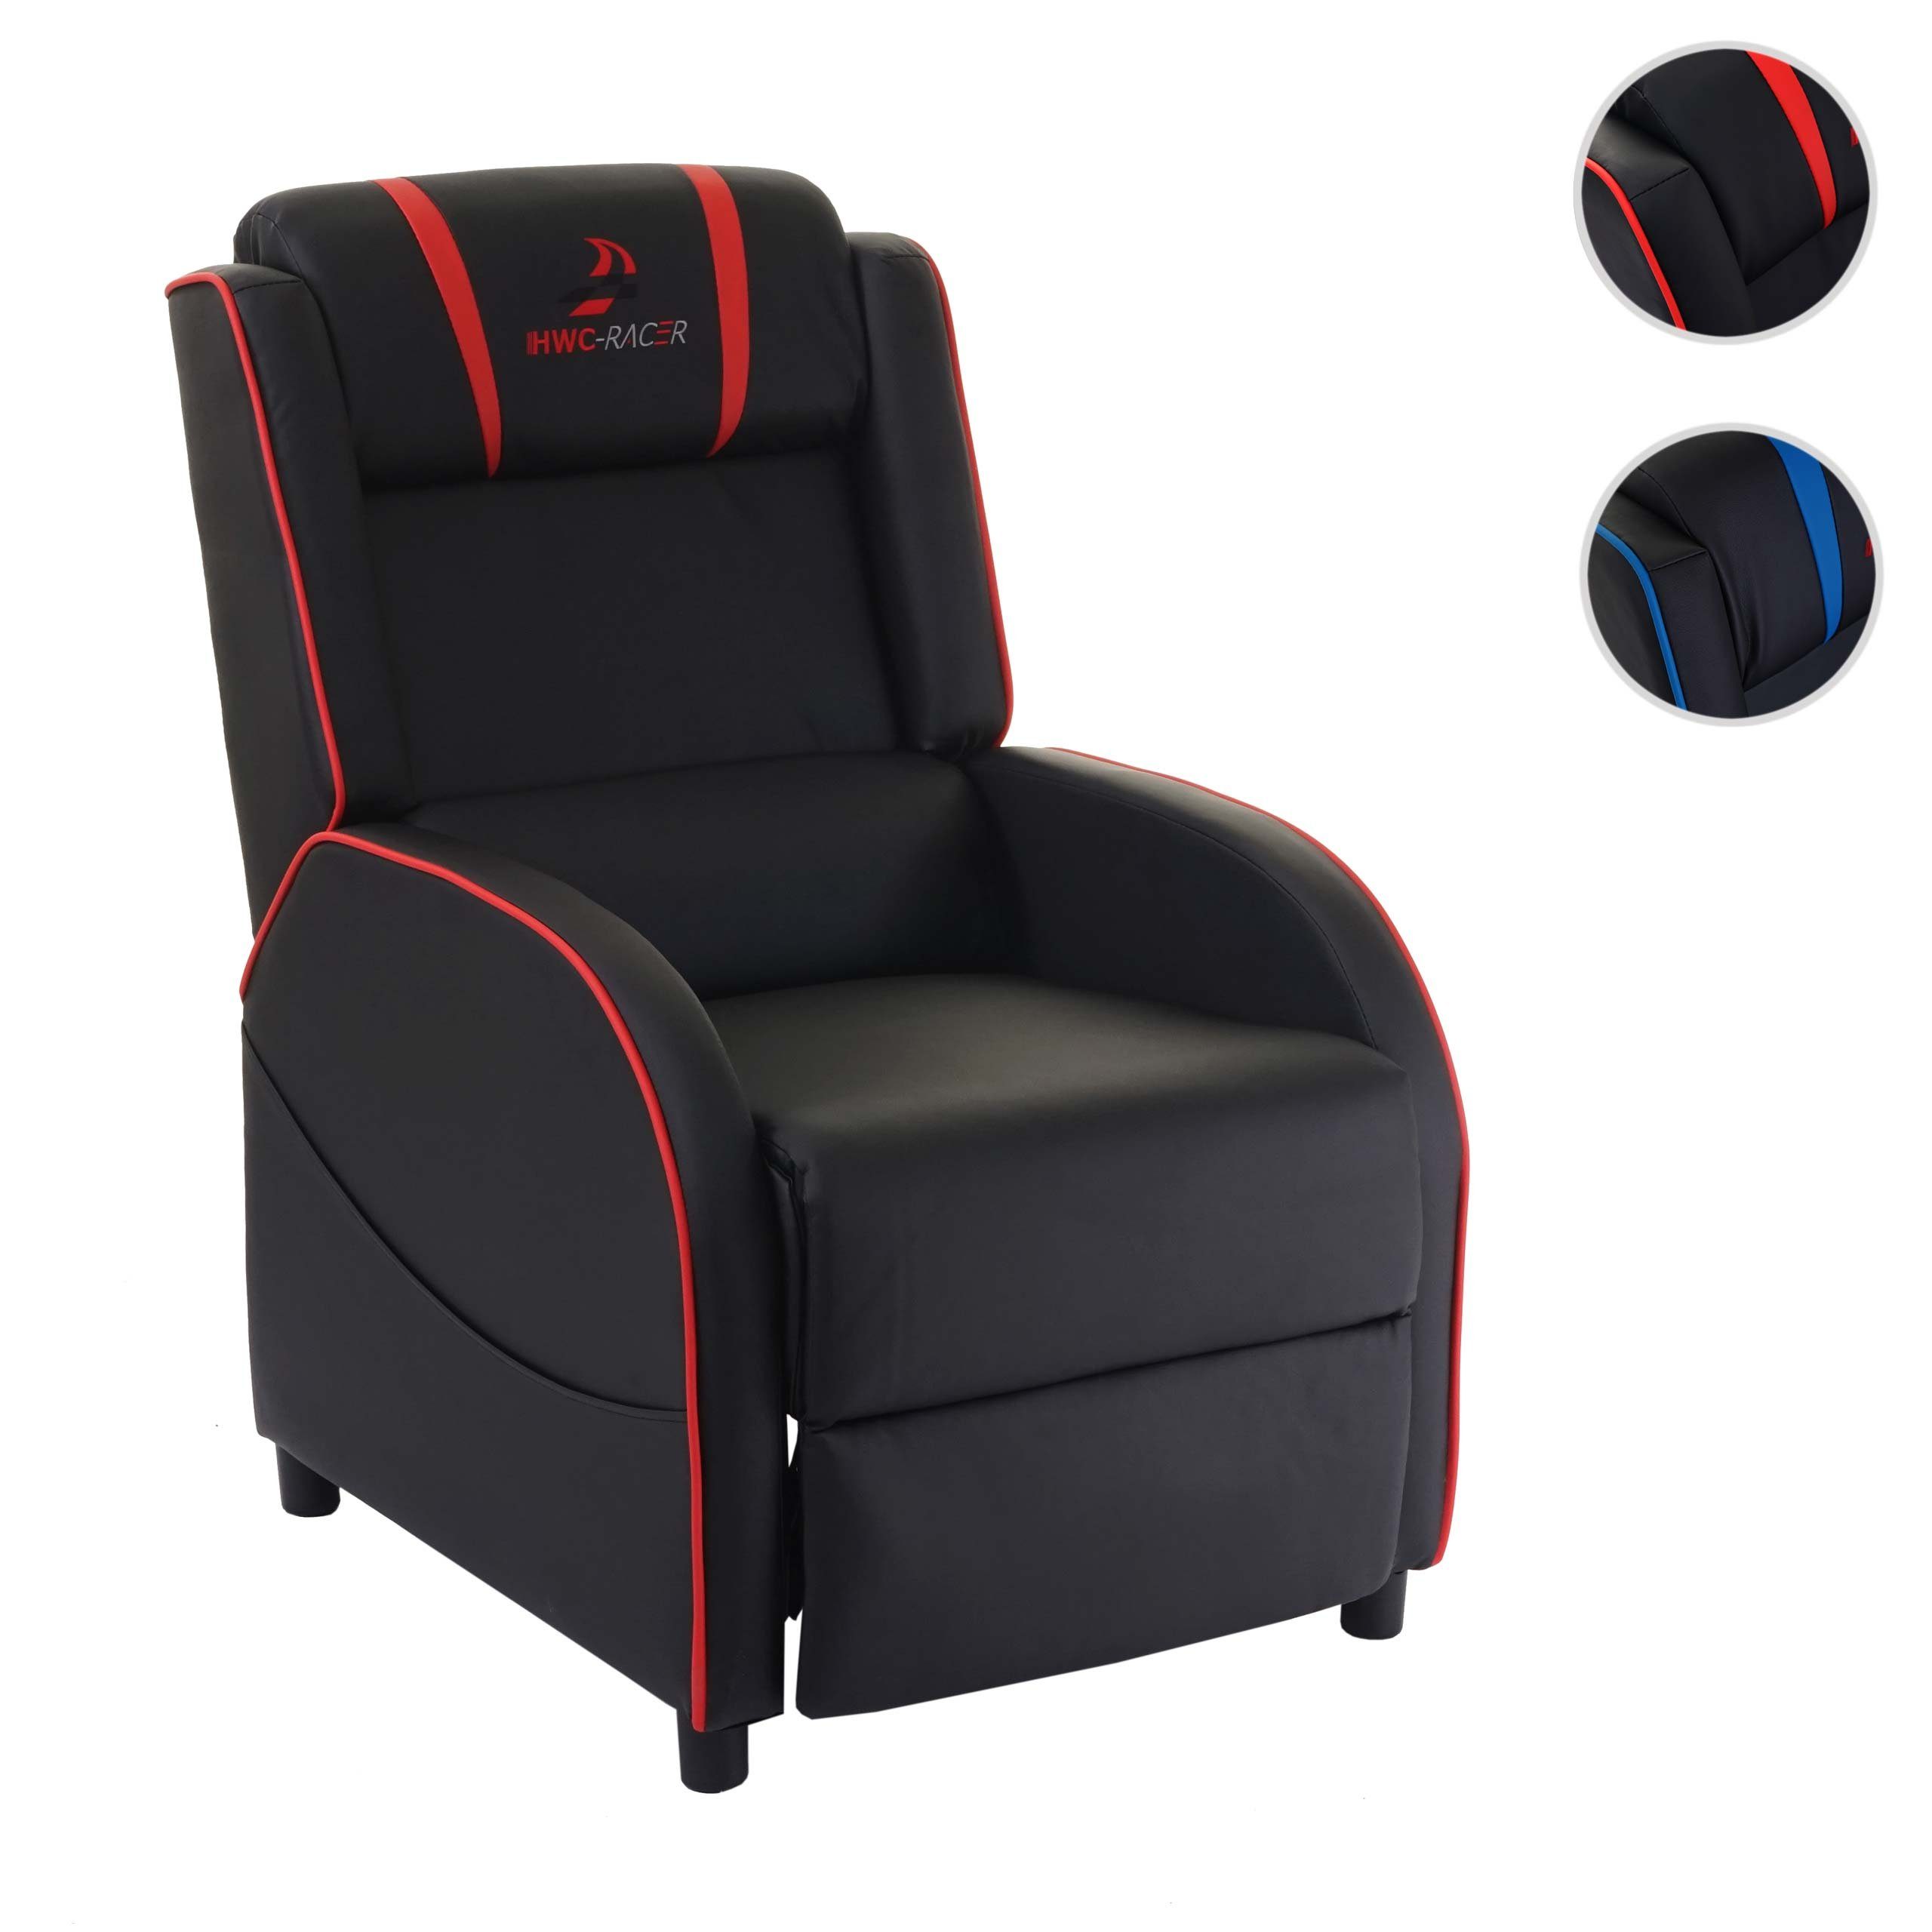 MCW Relaxsessel Taschen MCW-D68, Synchrone Verstellung, Liegeposition Sitz- schwarz-rot inkl. möglich, oder